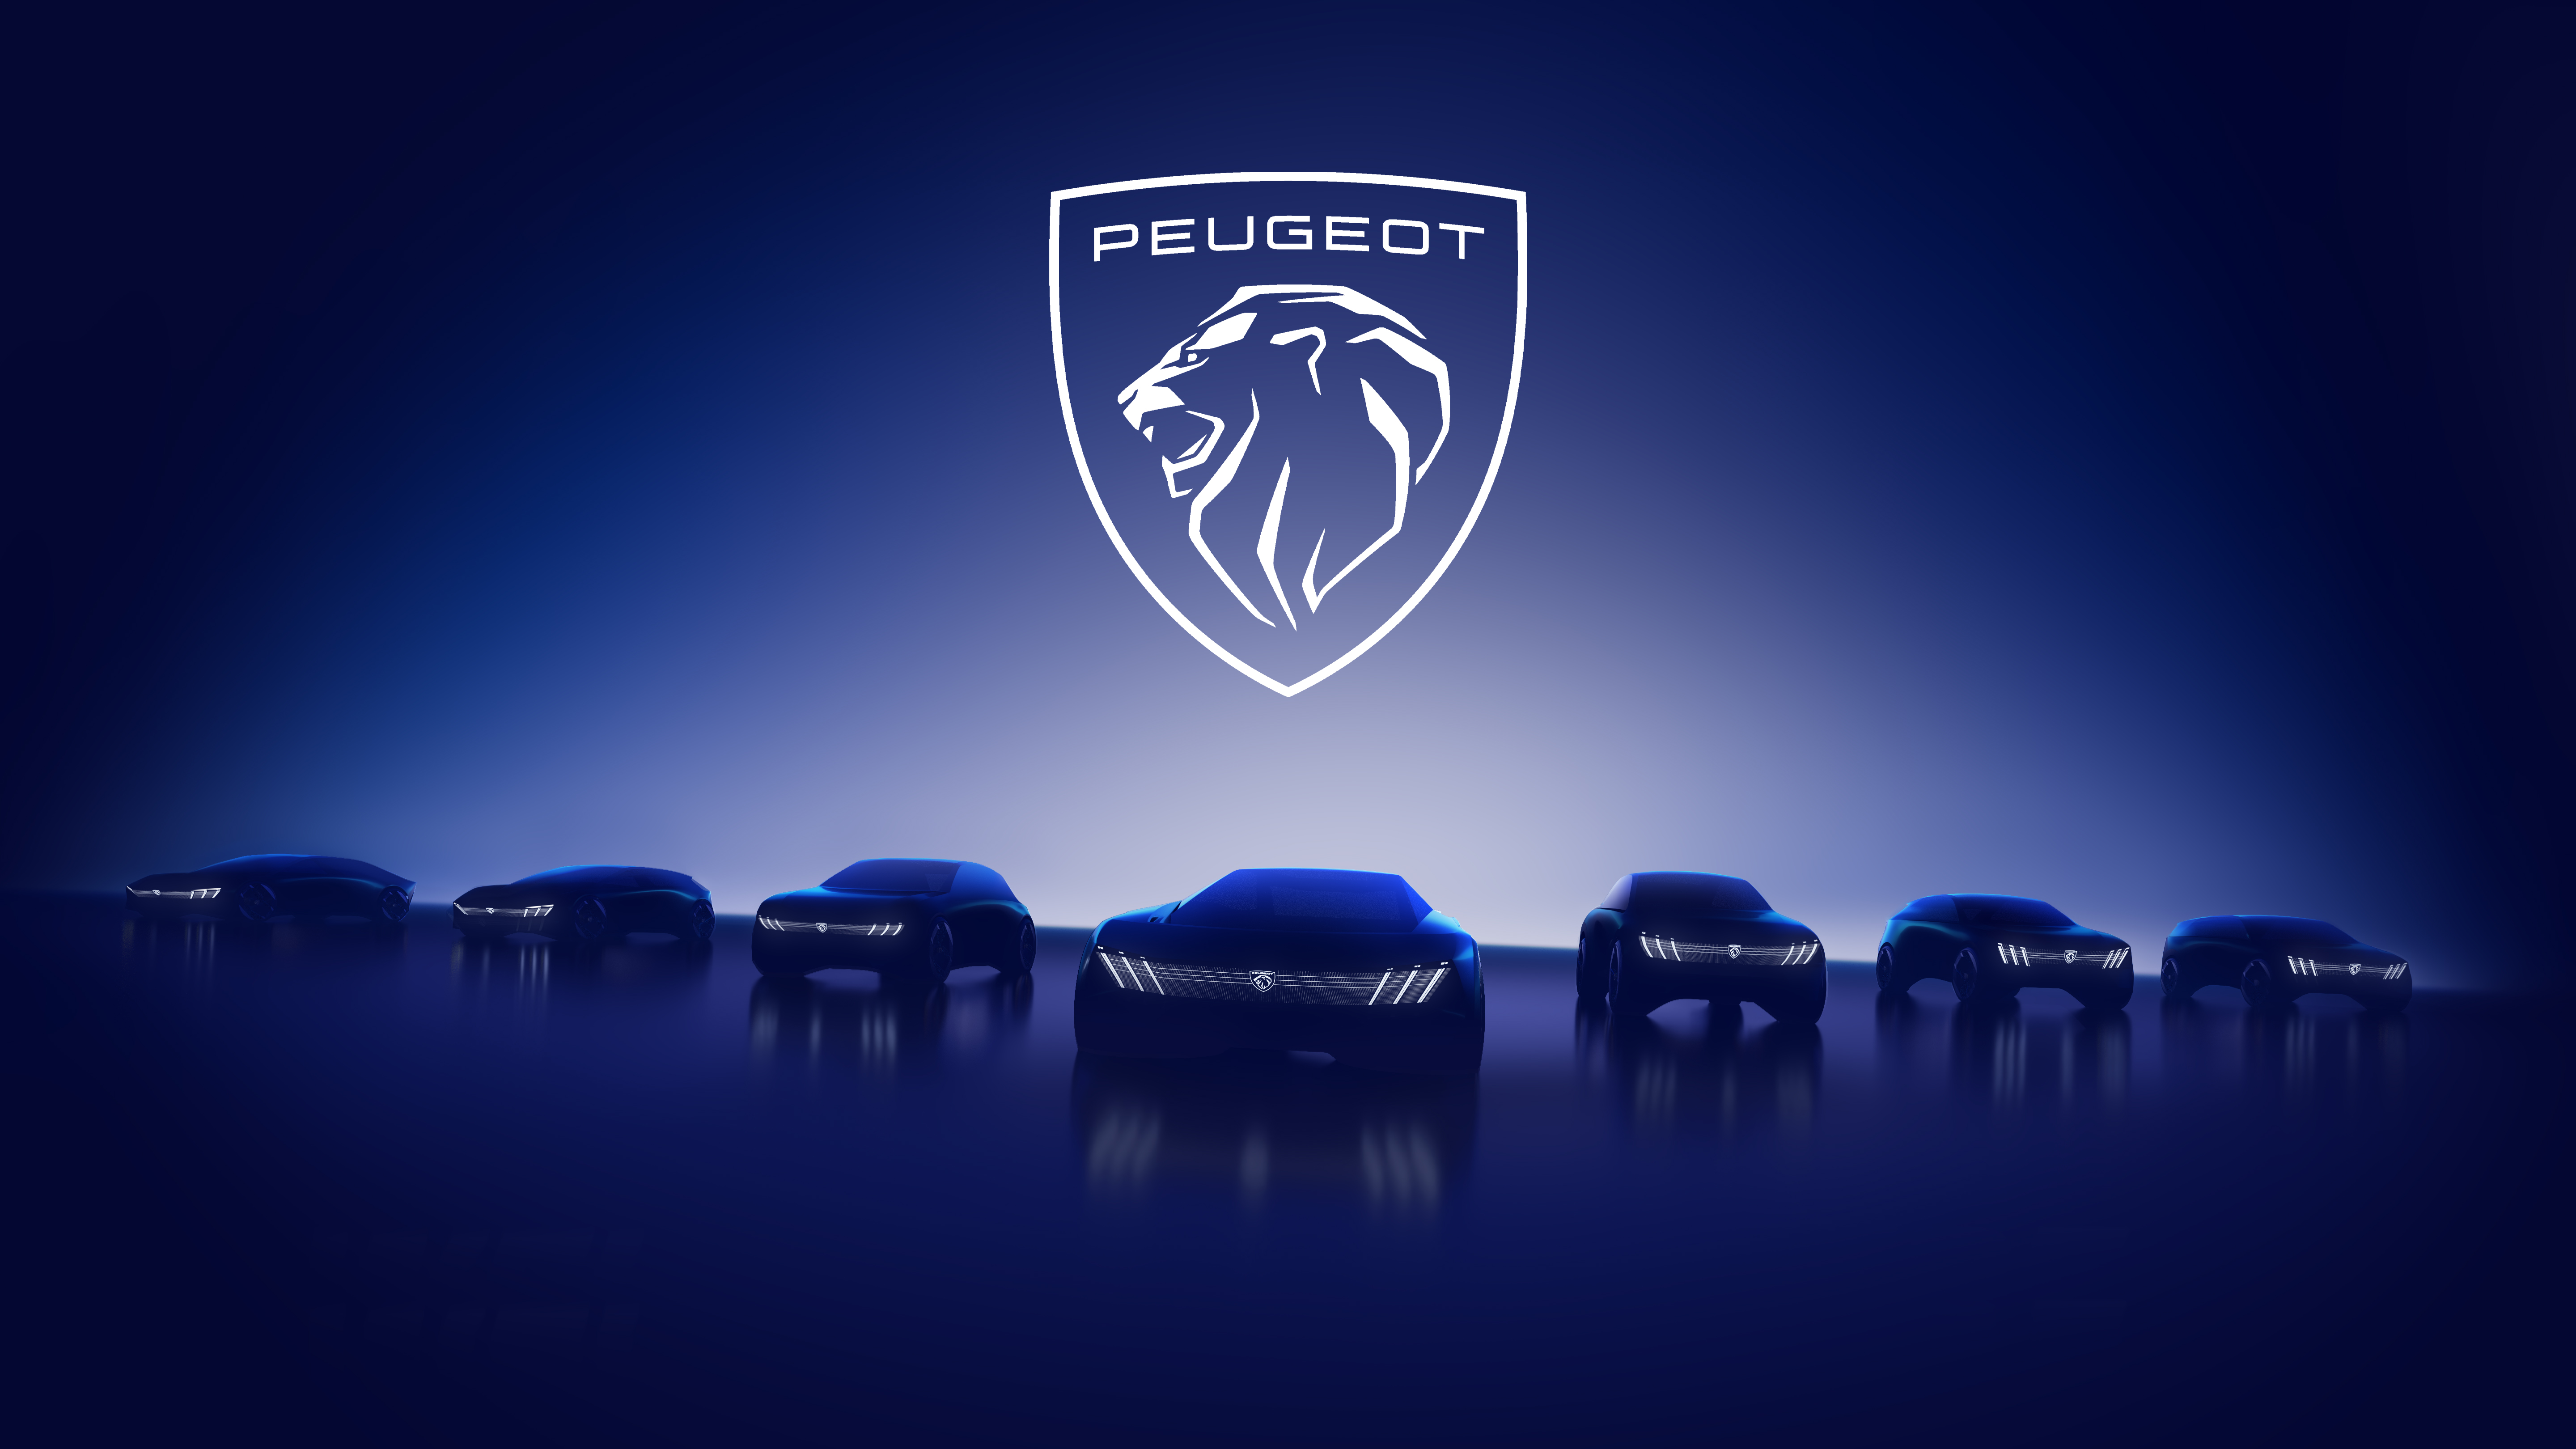 Calendrier des nouveautés – Toutes les futures Peugeot électriques jusqu’en 2027